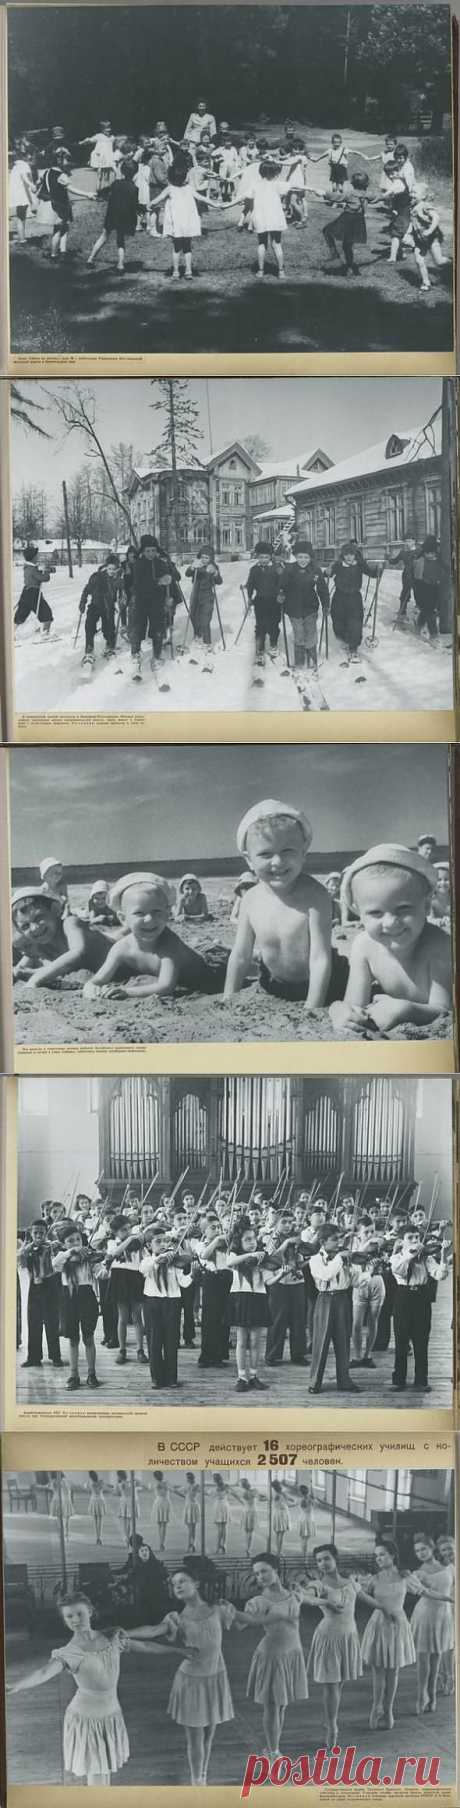 (+1) тема - Дети в СССР - альбом 1947 года (19 фотографий) | НАУКА И ЖИЗНЬ